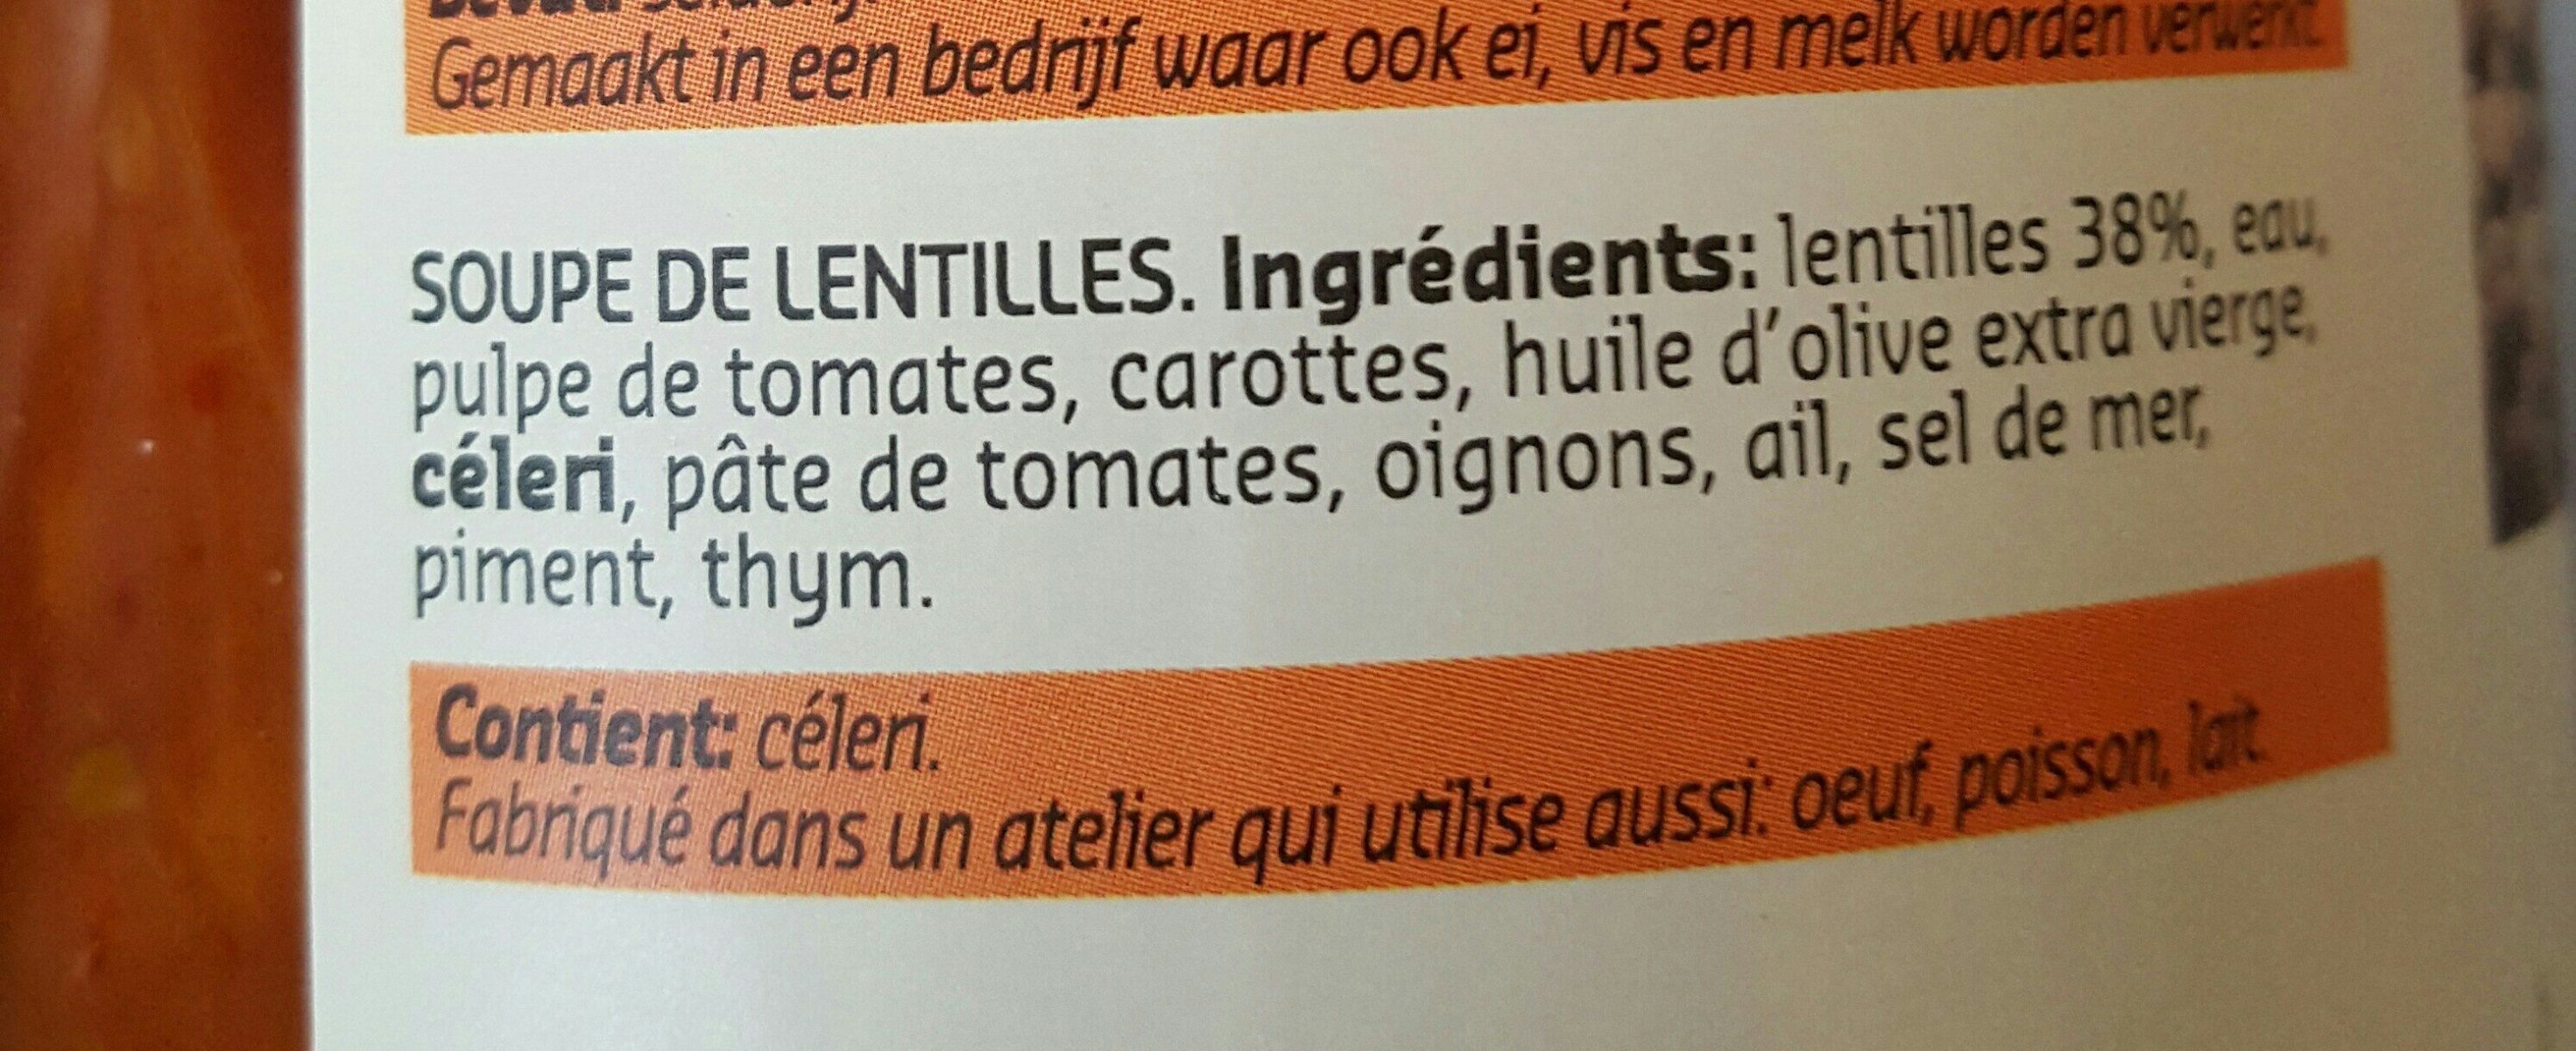 Soupe de lentille - Ingredients - fr